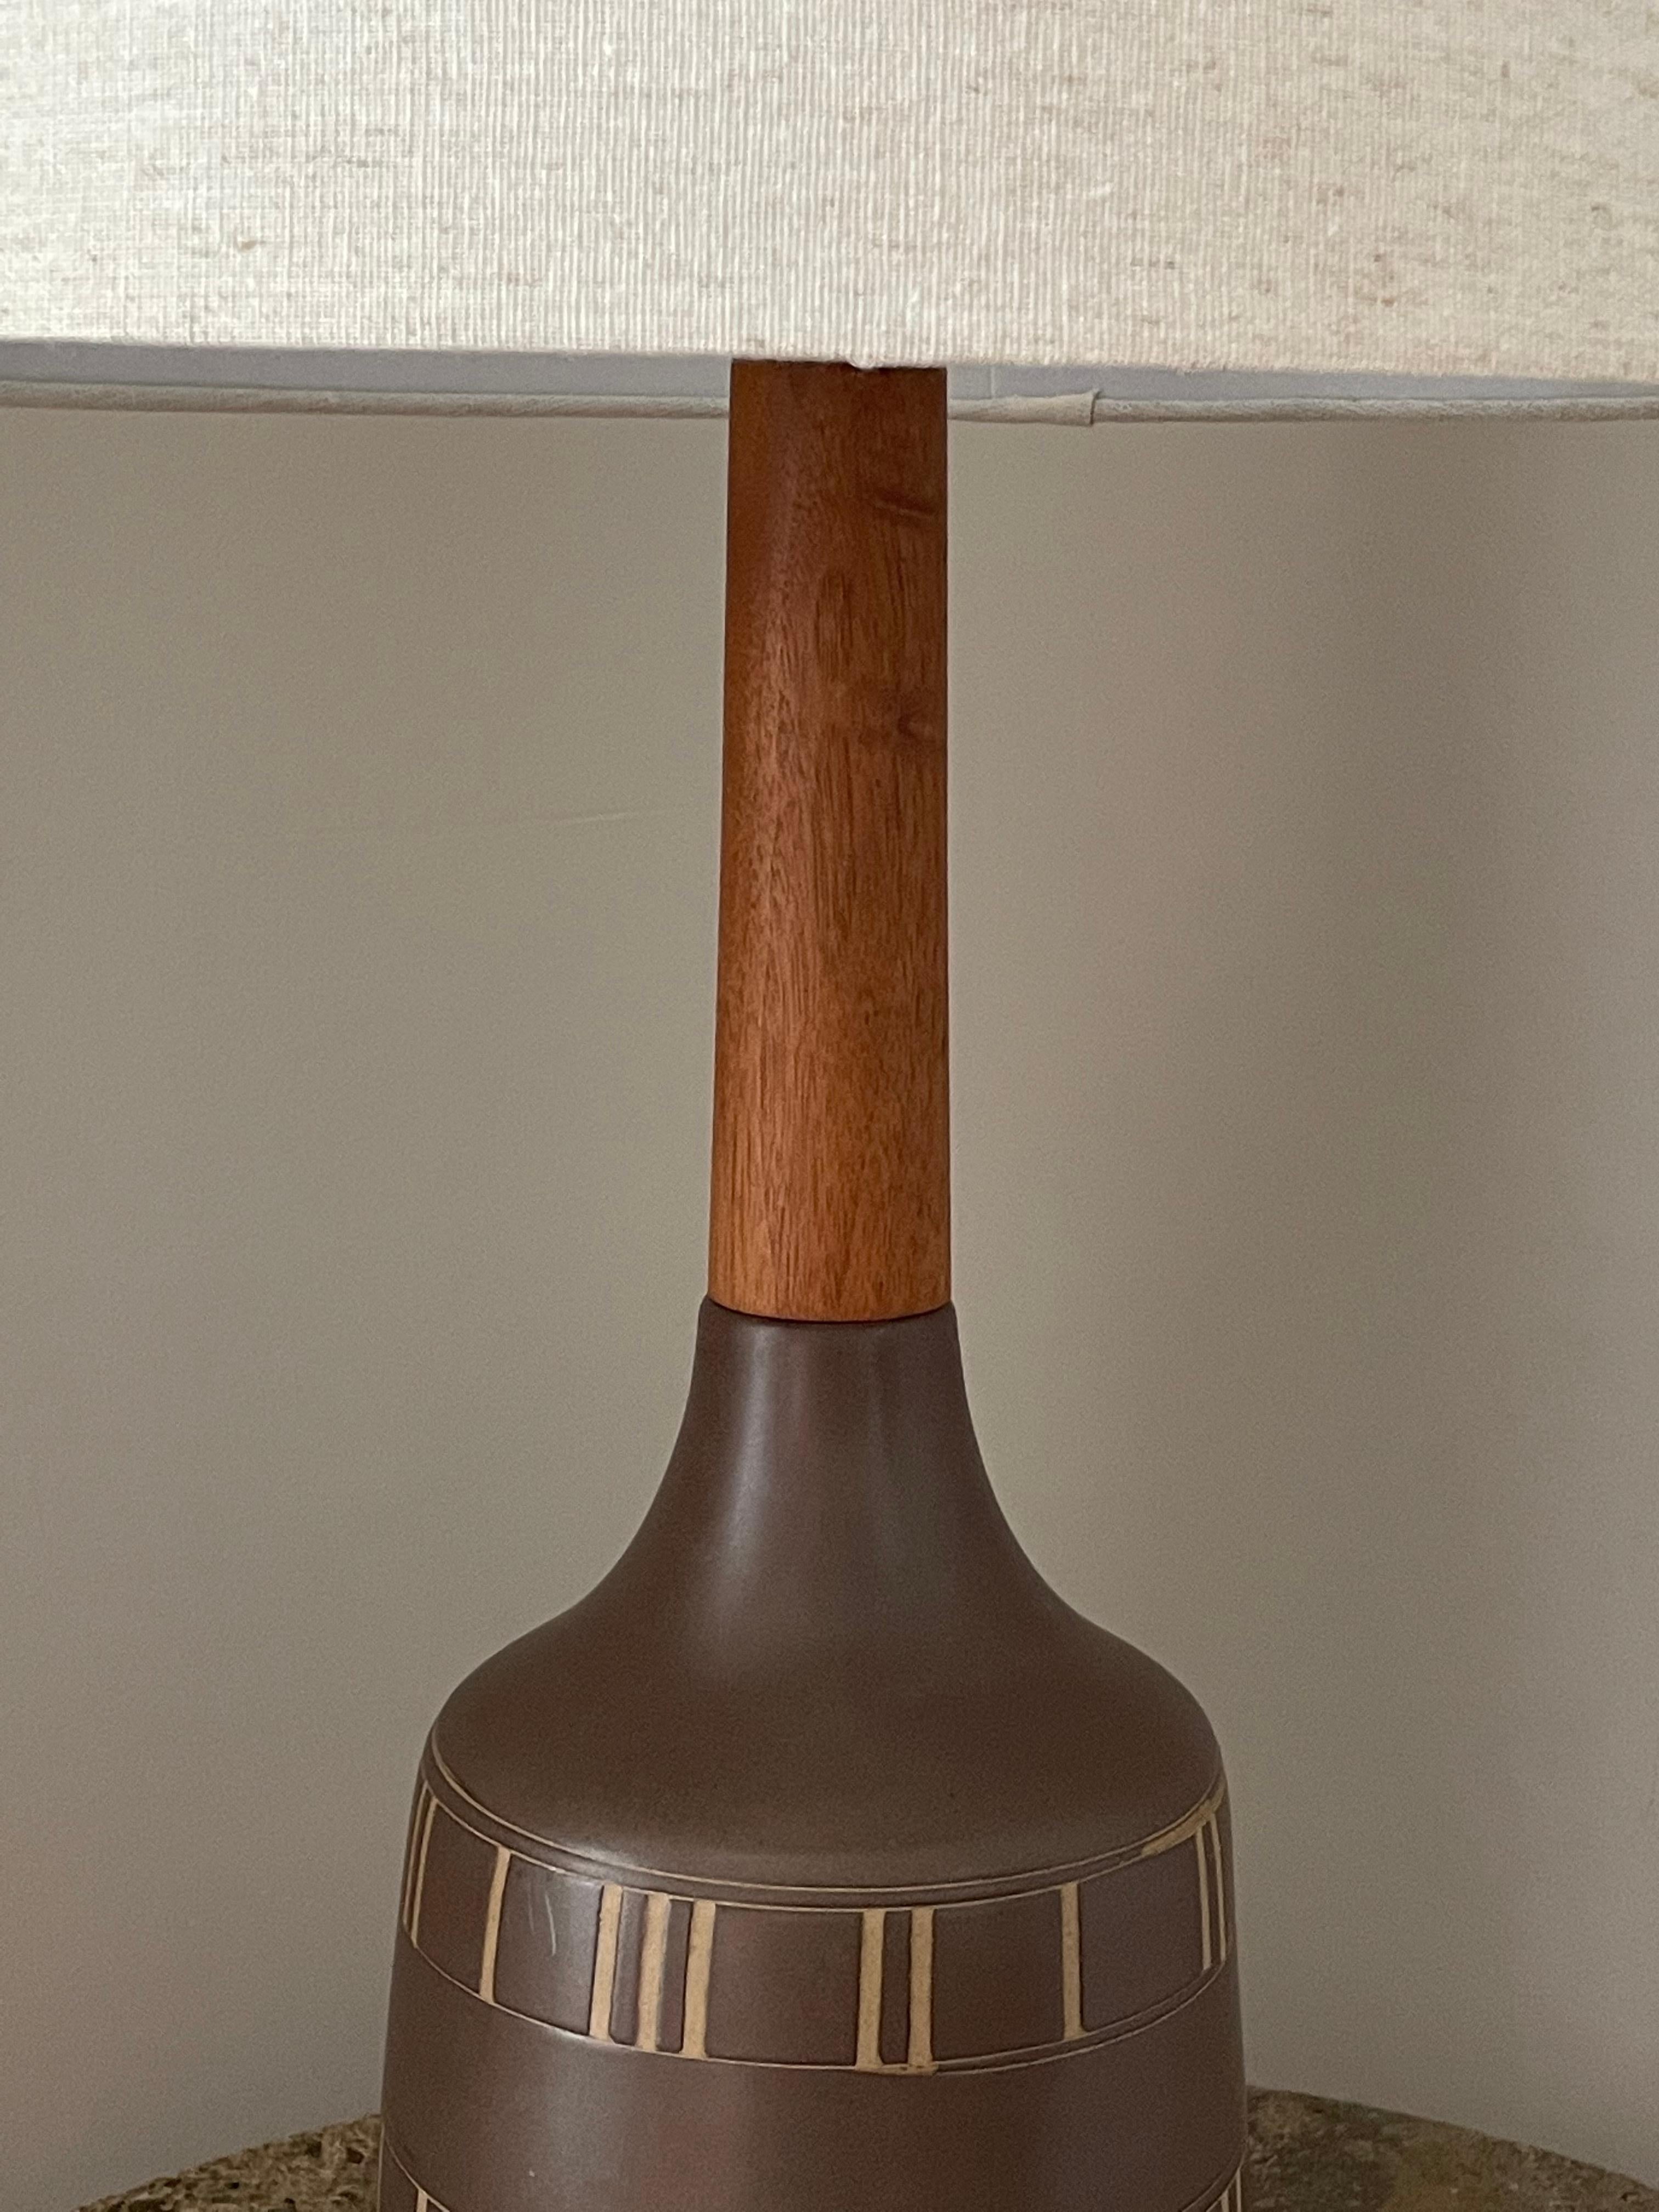 Magnifique lampe de table haute conçue par le célèbre duo de céramistes Jane et Gordon Martz pour Marshall Studios. La glaçure est d'un brun foncé mat et le motif est incisé. Long col en noyer avec embout de finition en noyer.

Dimensions globales